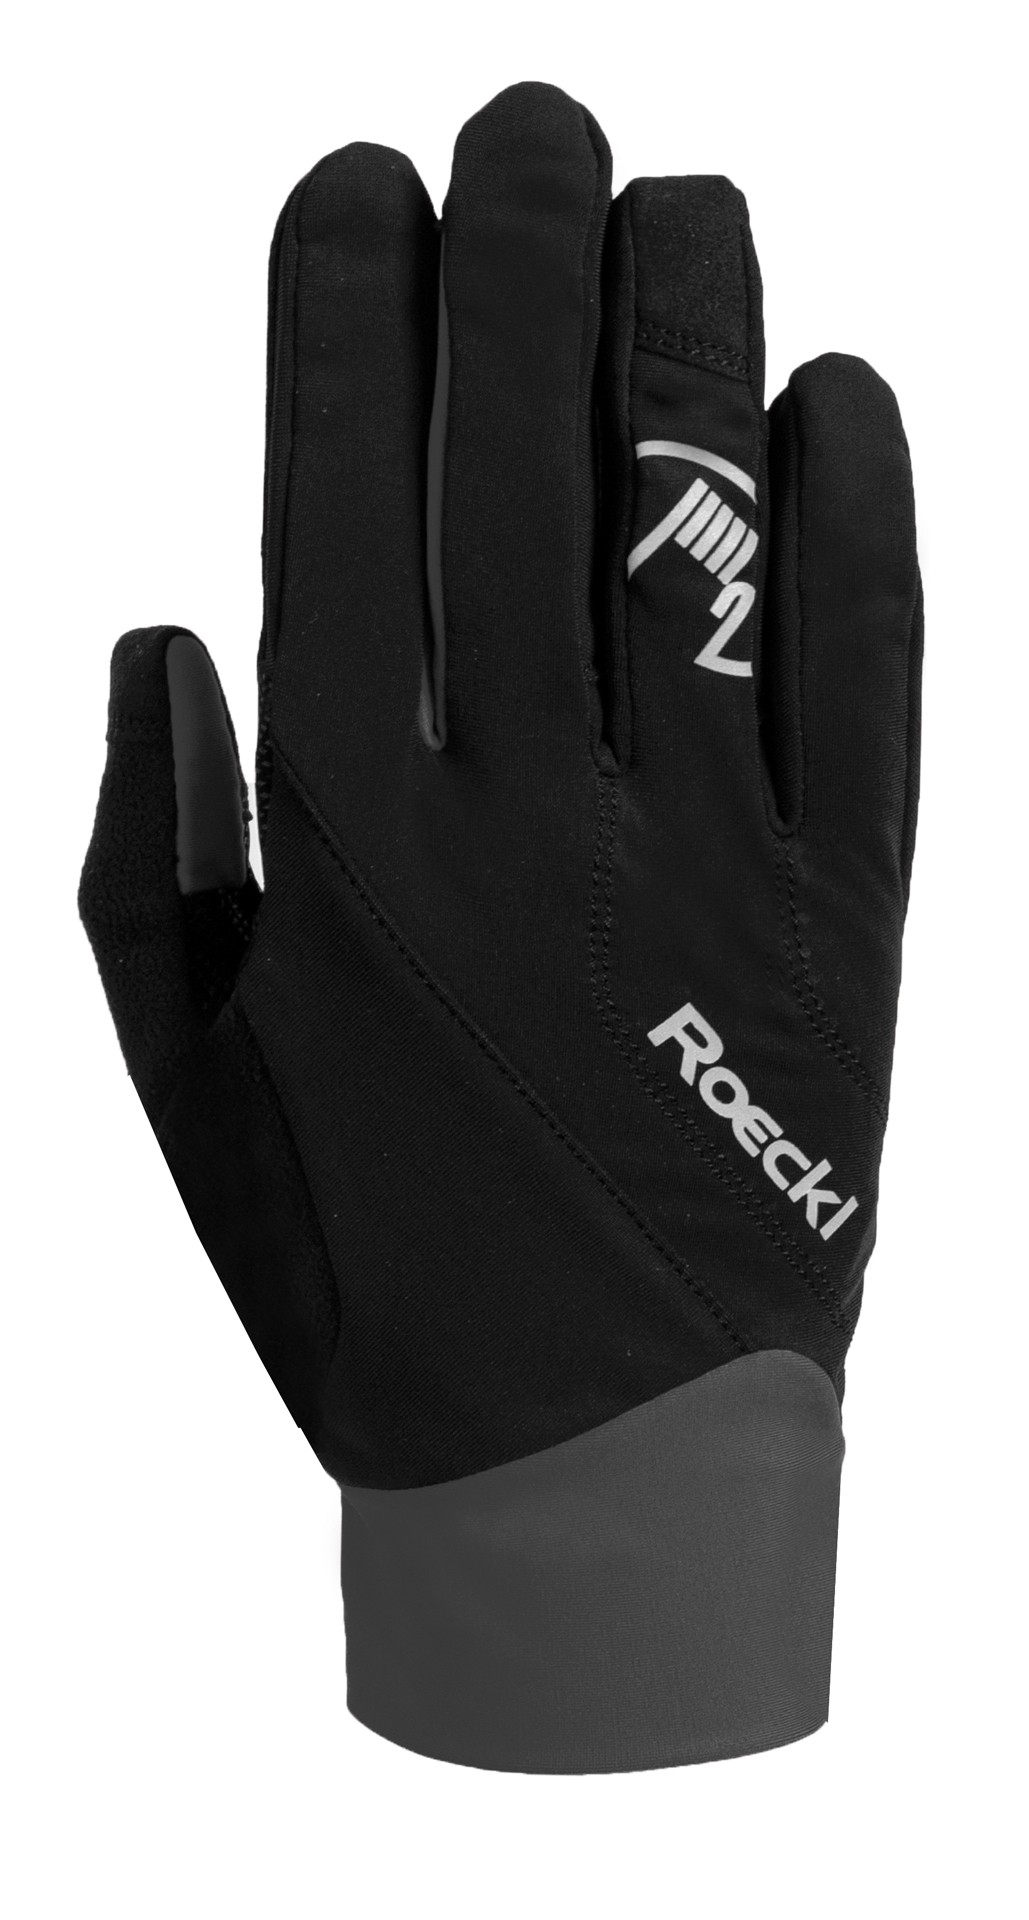 Roeckl prag gants de cyclisme noir gris